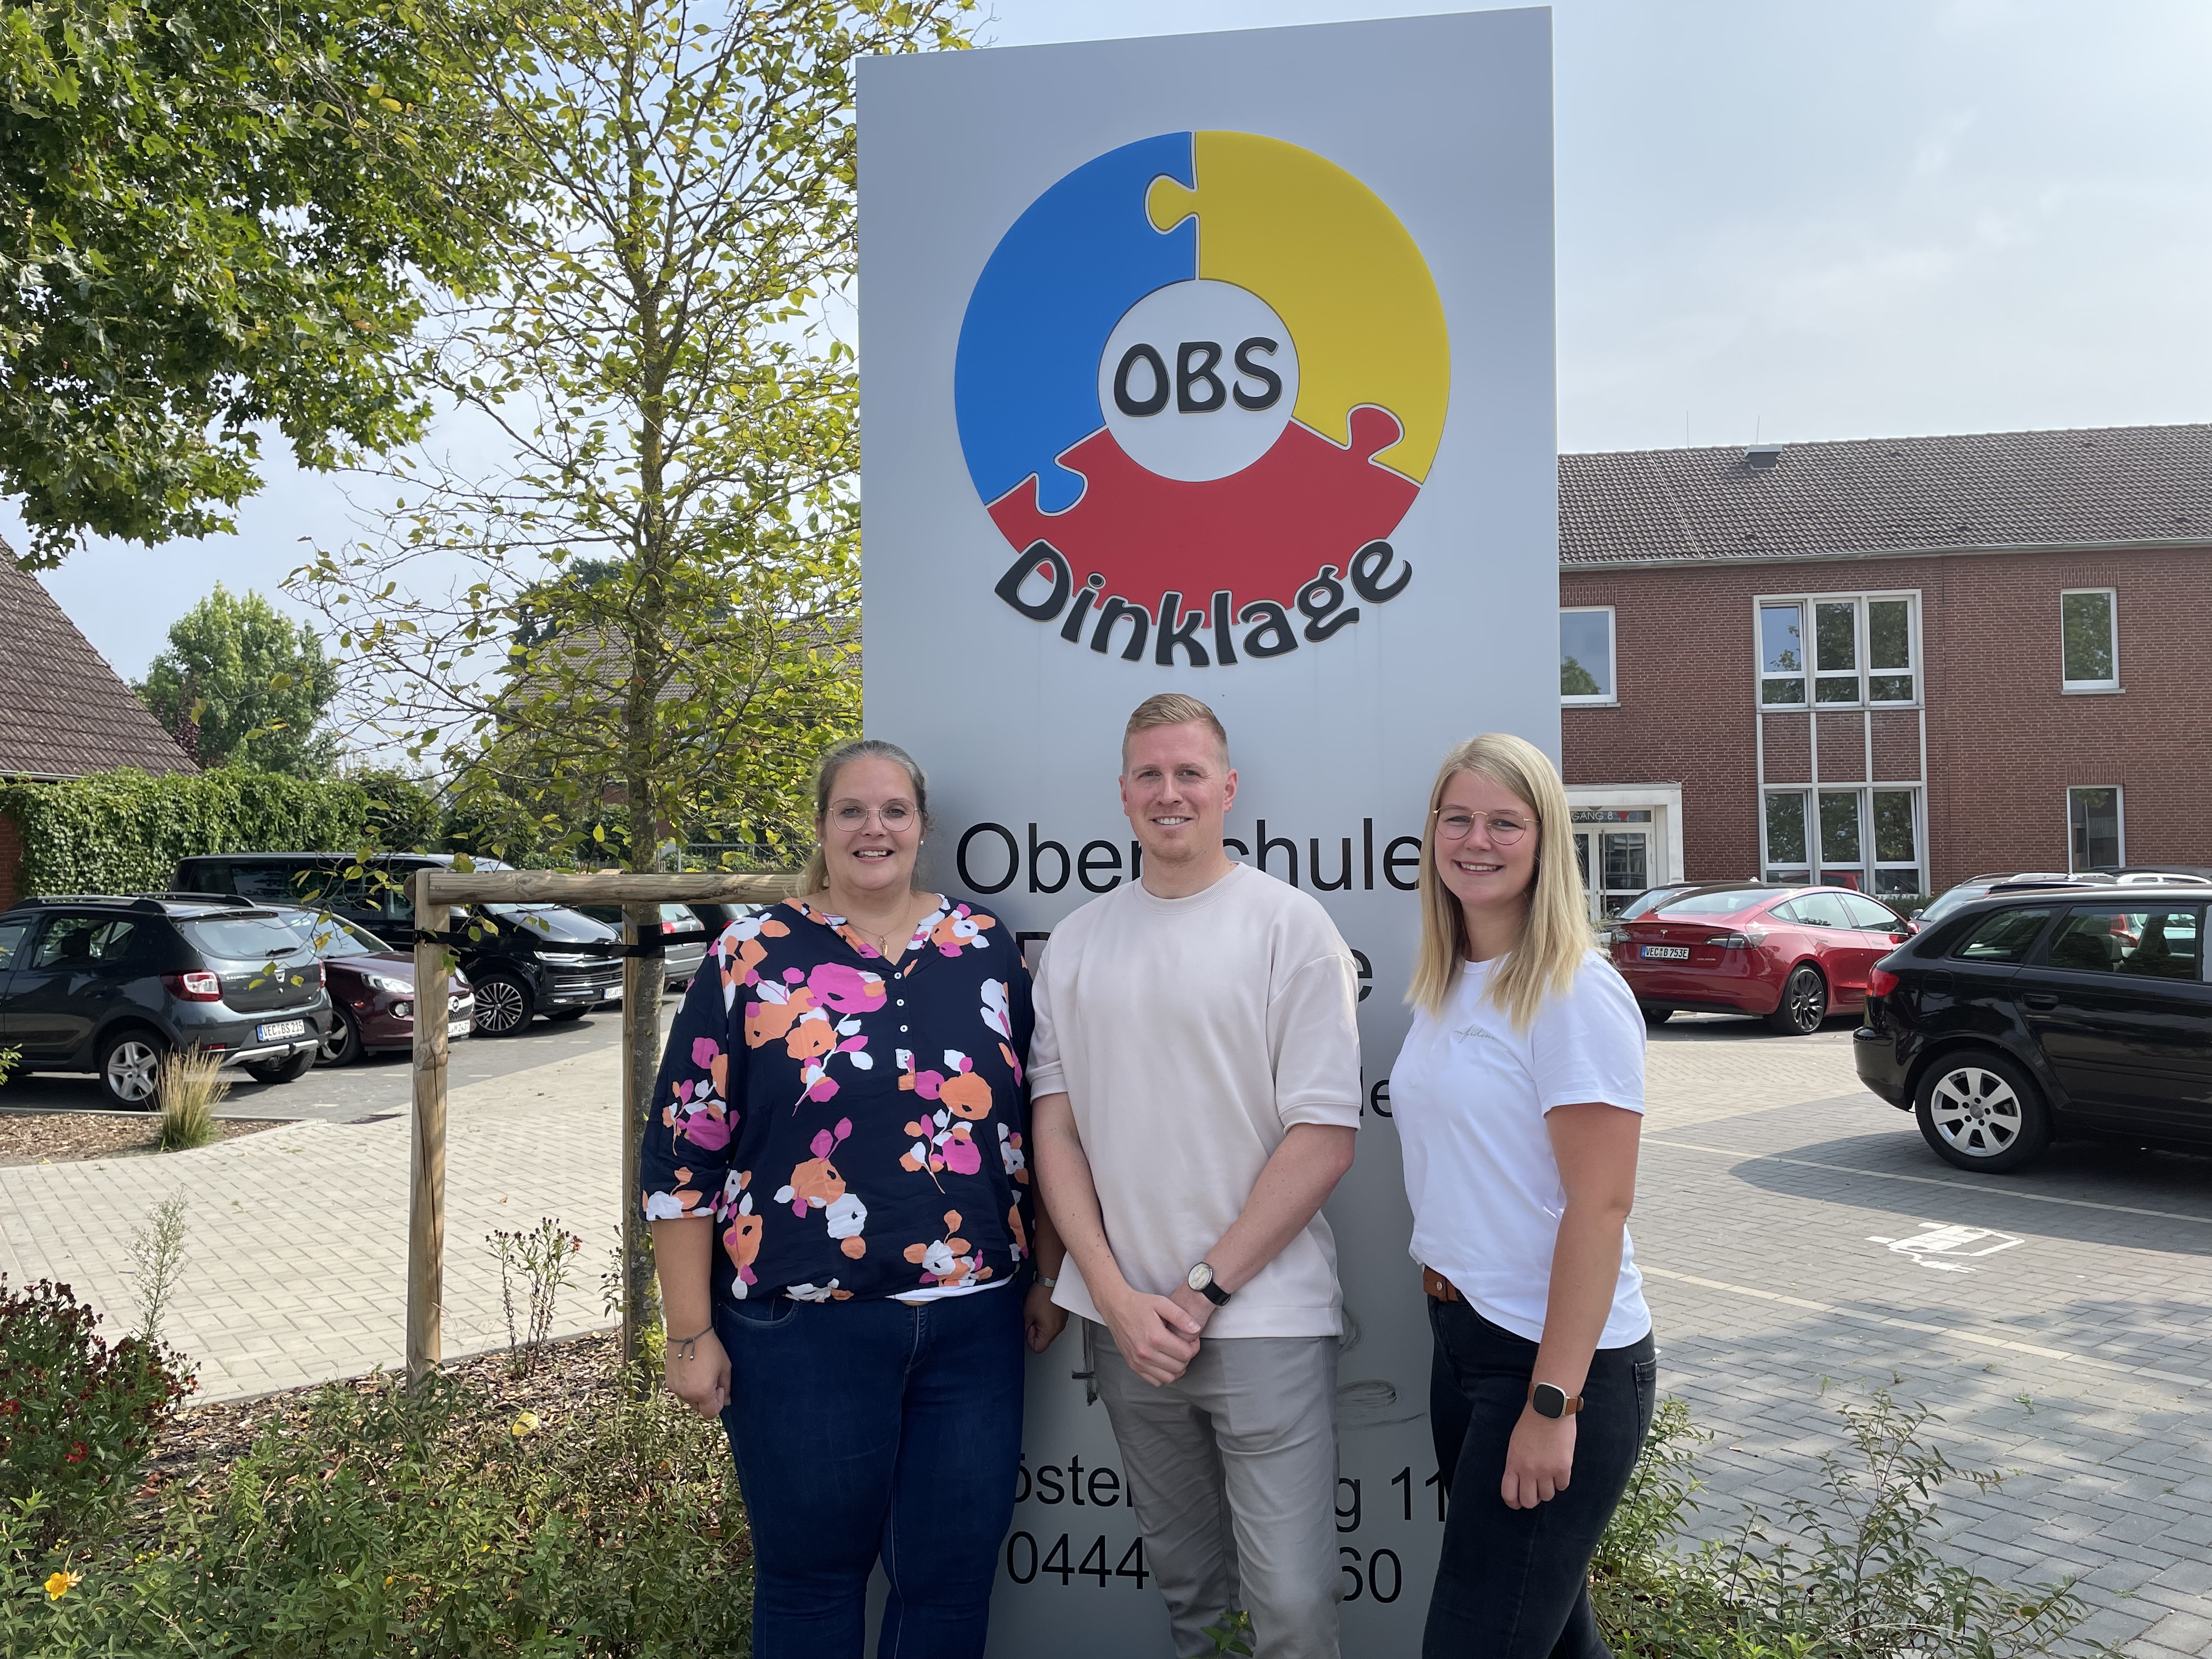 Freuen sich auf ihren Einsatz an der Oberschule mit gymnasialem Zweig: Heike Brengelmann, Volker Stromann und Theresa Keßling